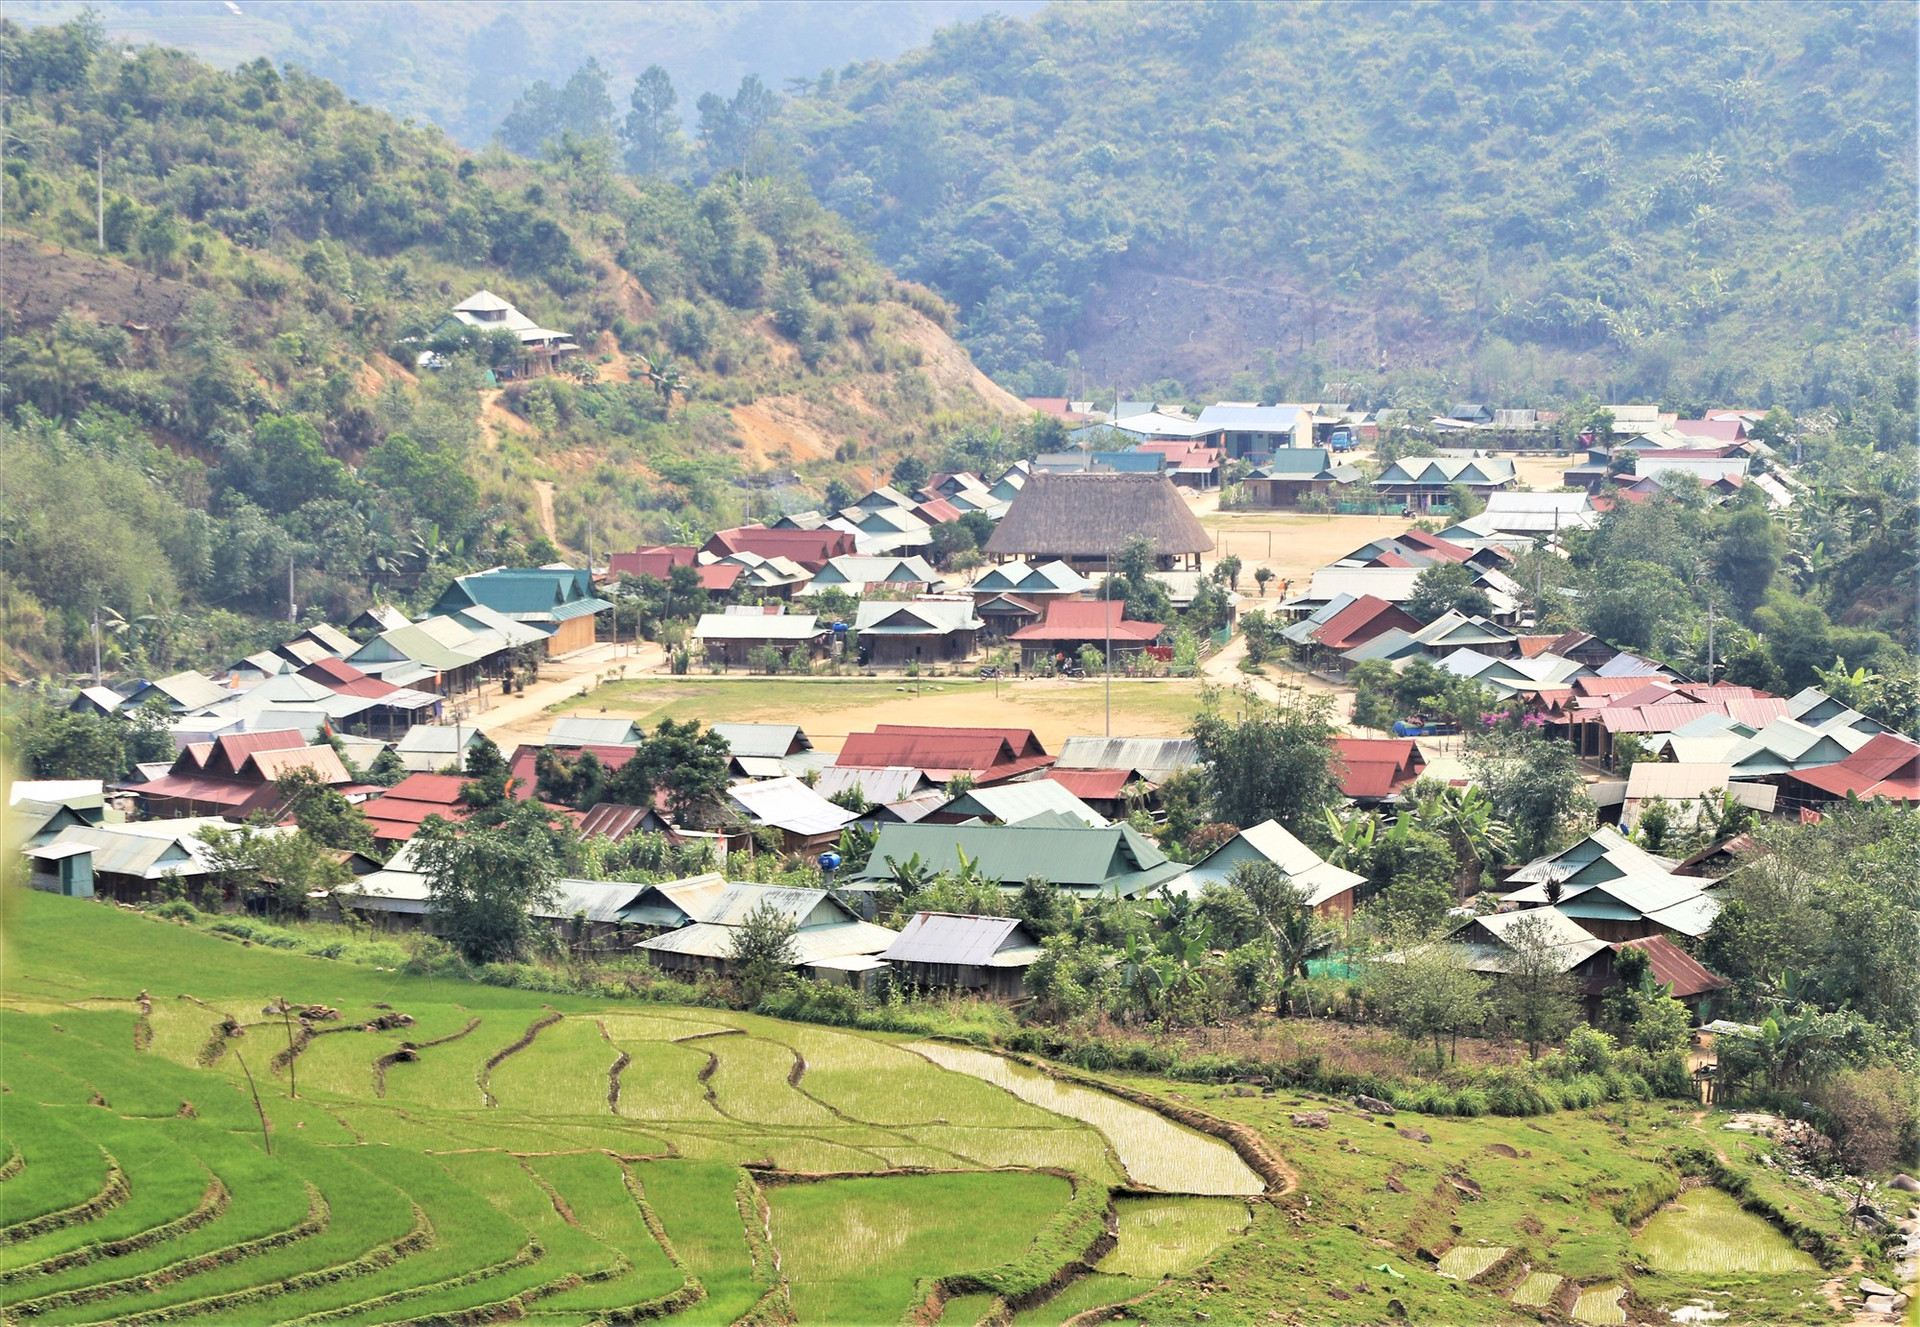 Mô hình sắp xếp dân cư ở Tây Giang được đánh giá đem lại hiệu quả thiết thực trong phát triển kinh tế - xã hội miền núi. Ảnh: ALĂNG NGƯỚC